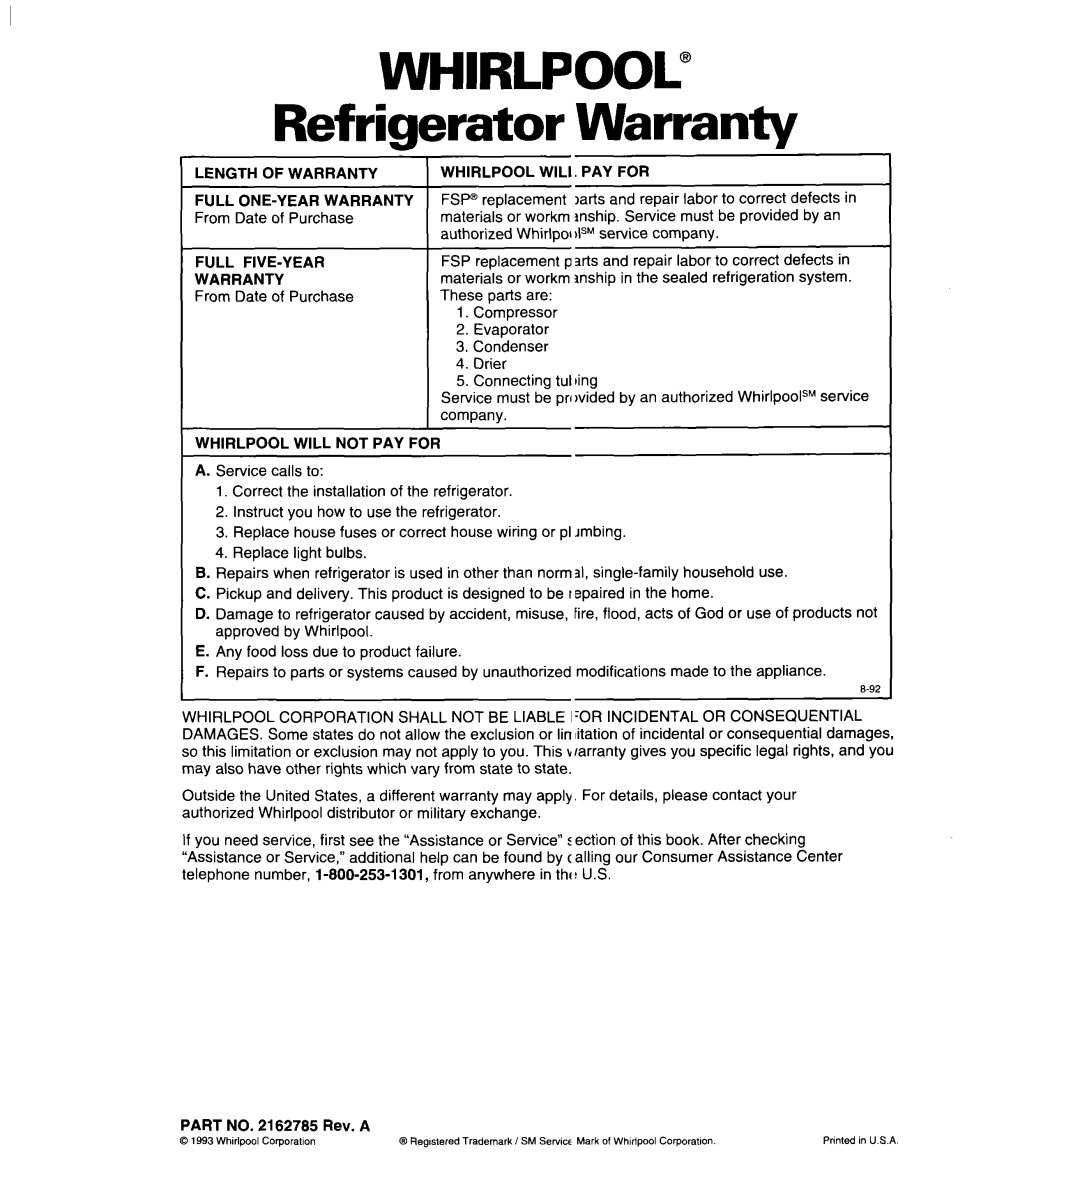 Whirlpool ET18UK, ET20LK, ET18LK warranty WHIRLPOOL” Refrigerator Warranty 